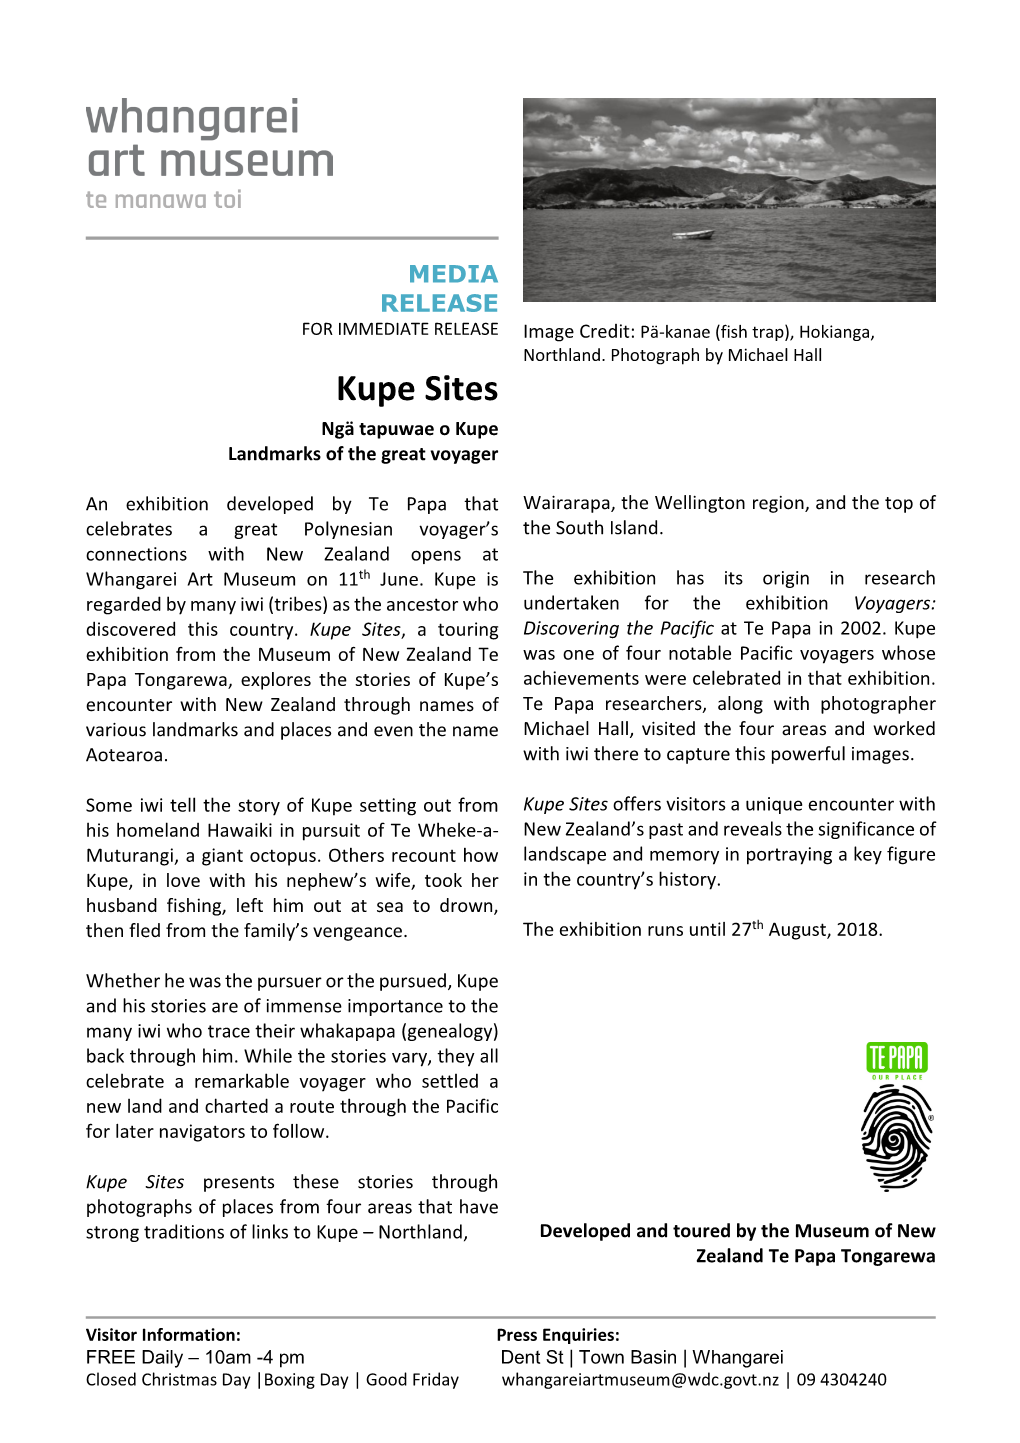 Kupe Press Release